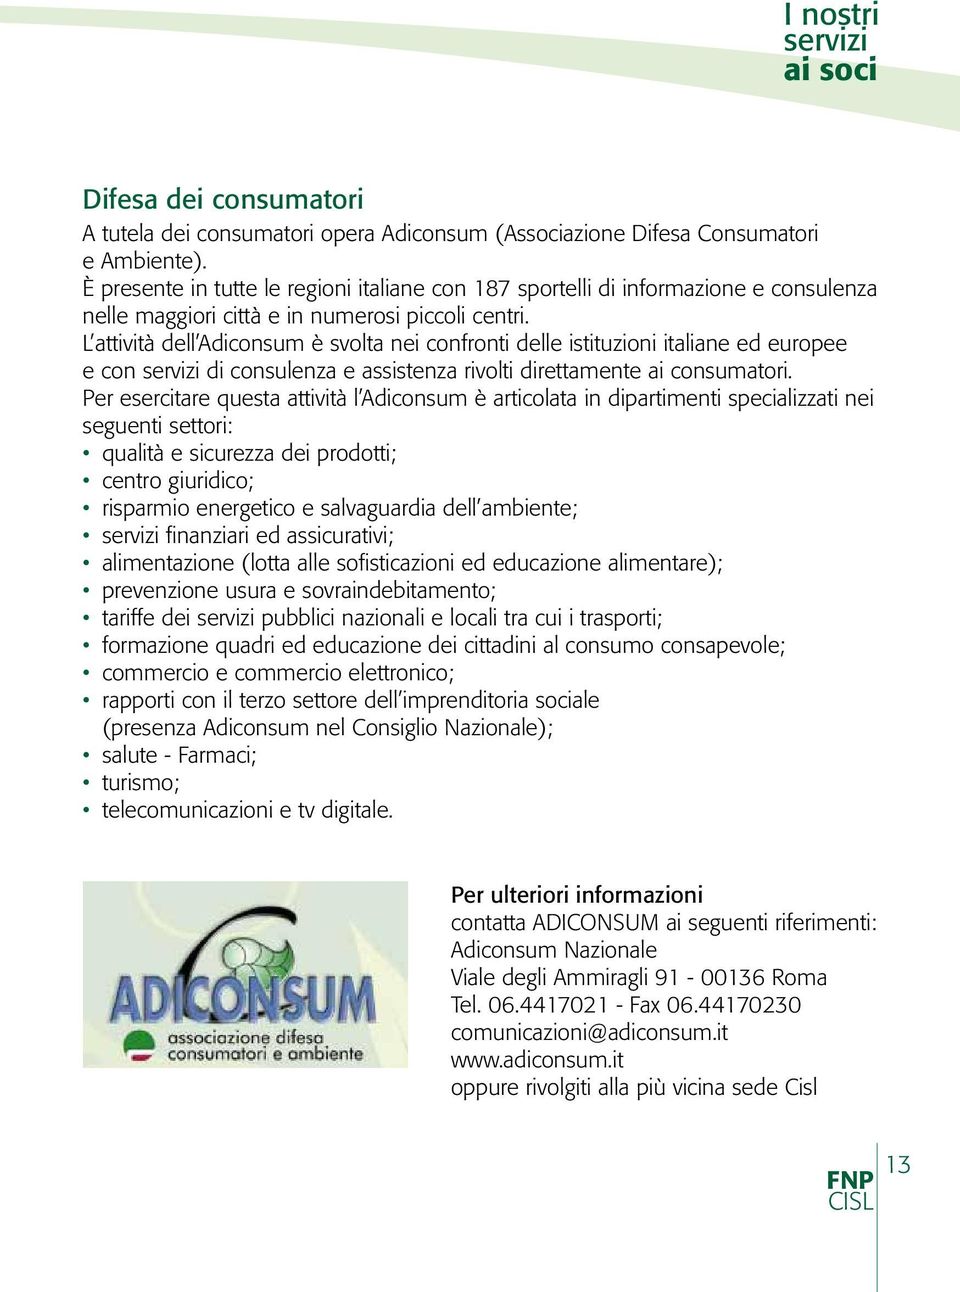 L attività dell Adiconsum è svolta nei confronti delle istituzioni italiane ed europee e con servizi di consulenza e assistenza rivolti direttamente ai consumatori.